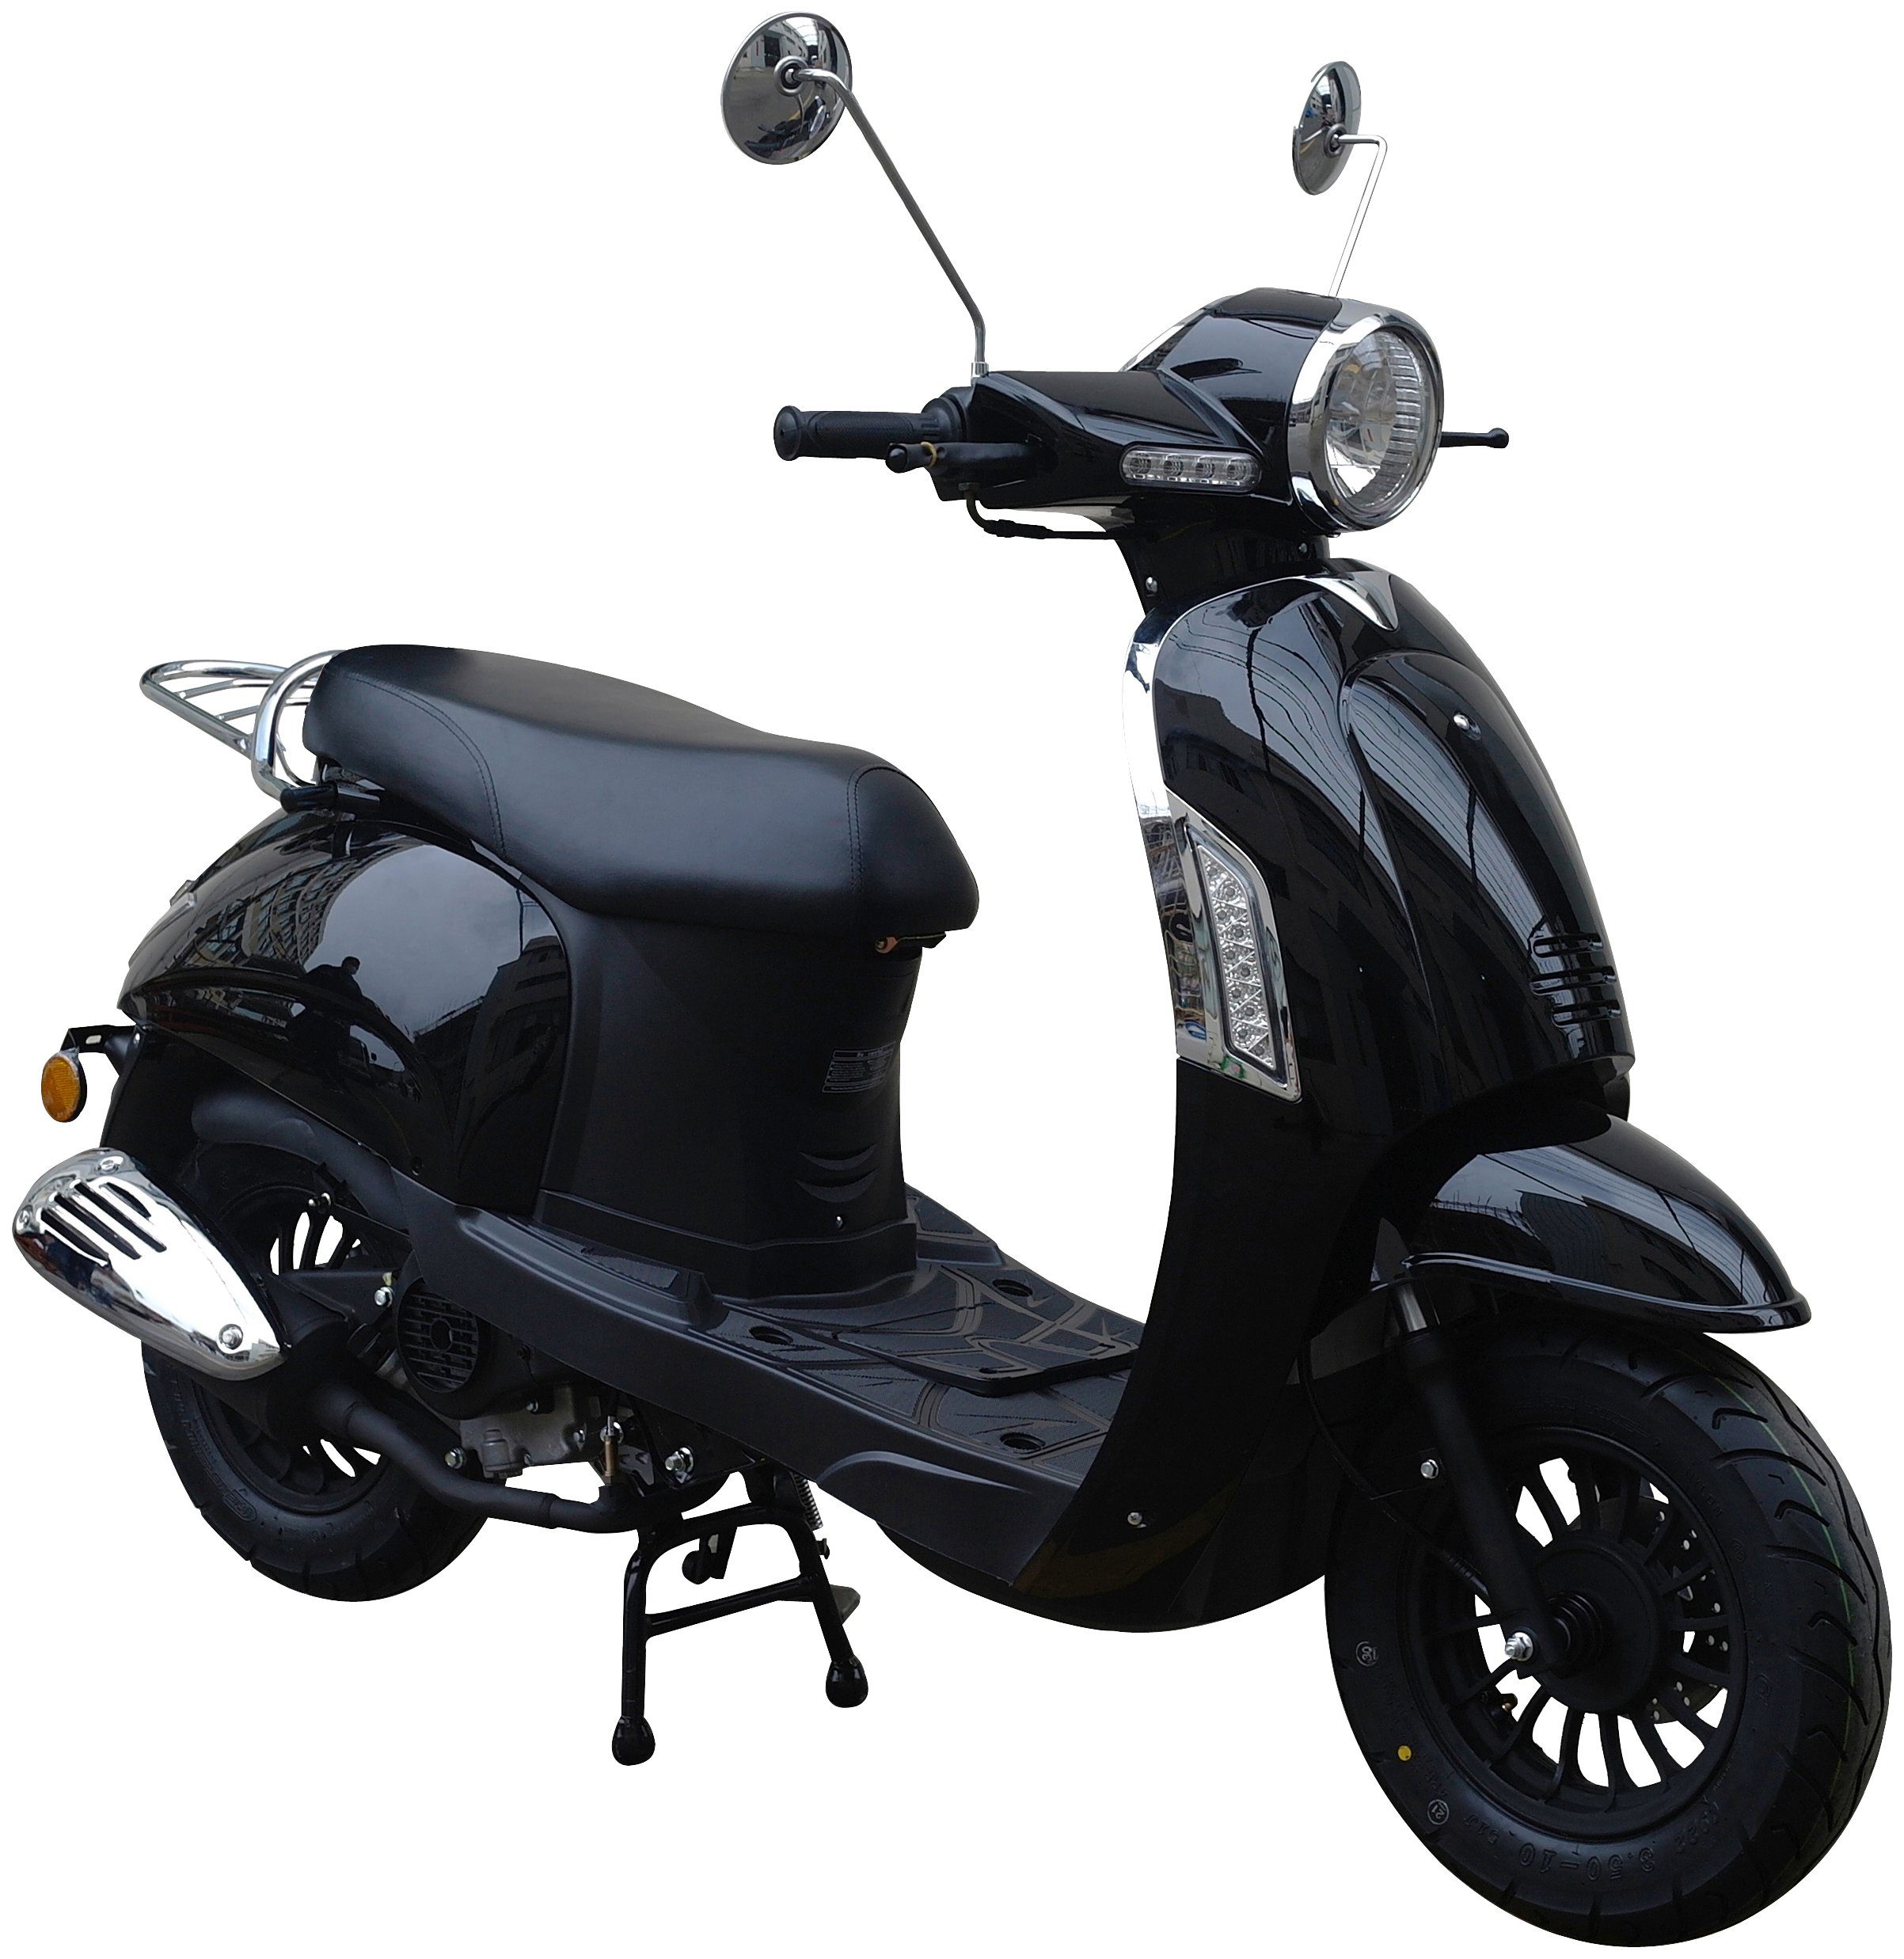 GT UNION Motorroller Massimo, 50 ccm, 45 km/h, Euro 5, Topmoderne,  elektronische Einspritzanlage (EFI) für weniger Verbrauch